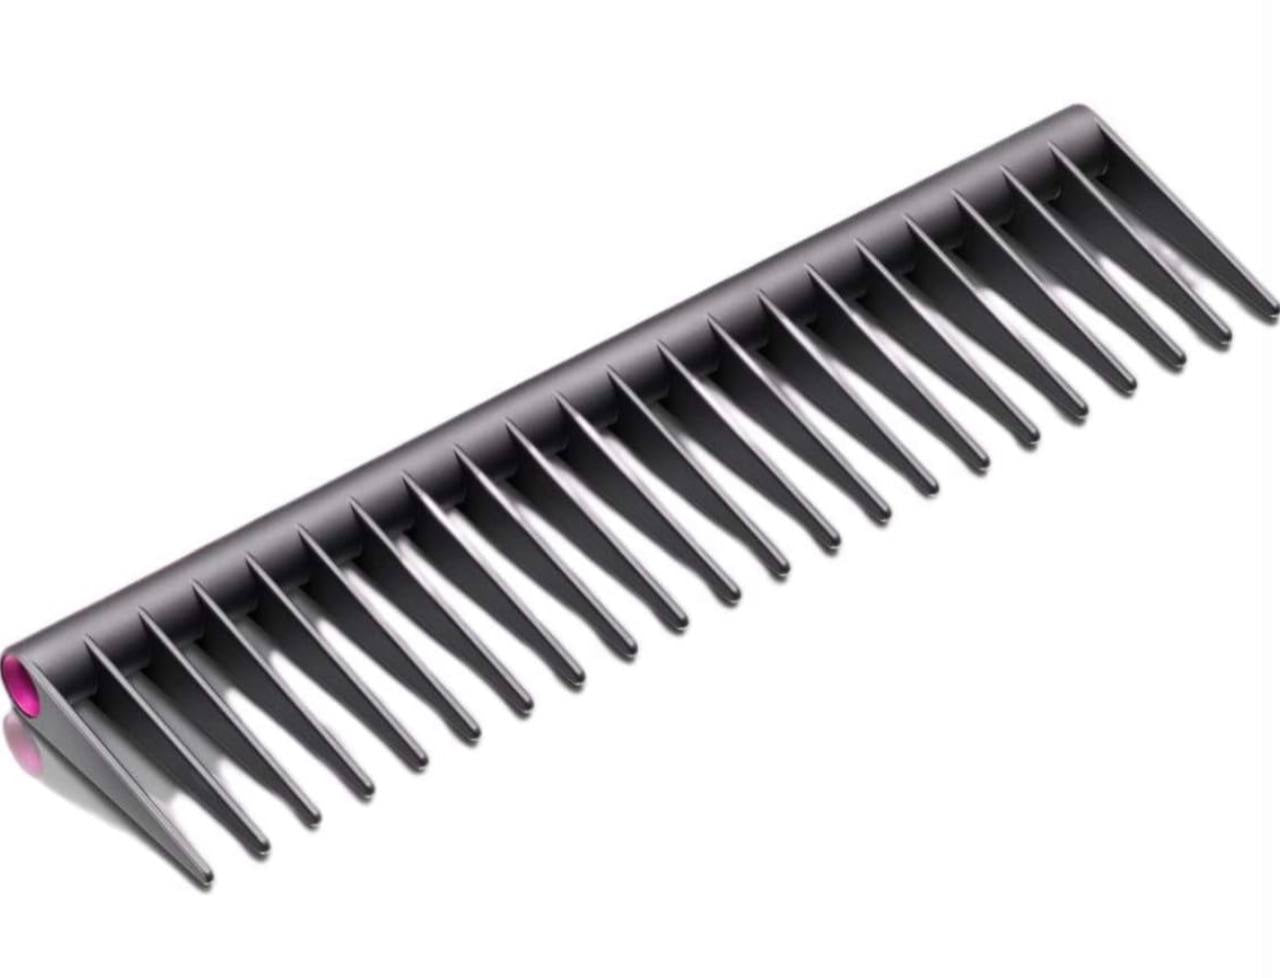 Dyson hair brush